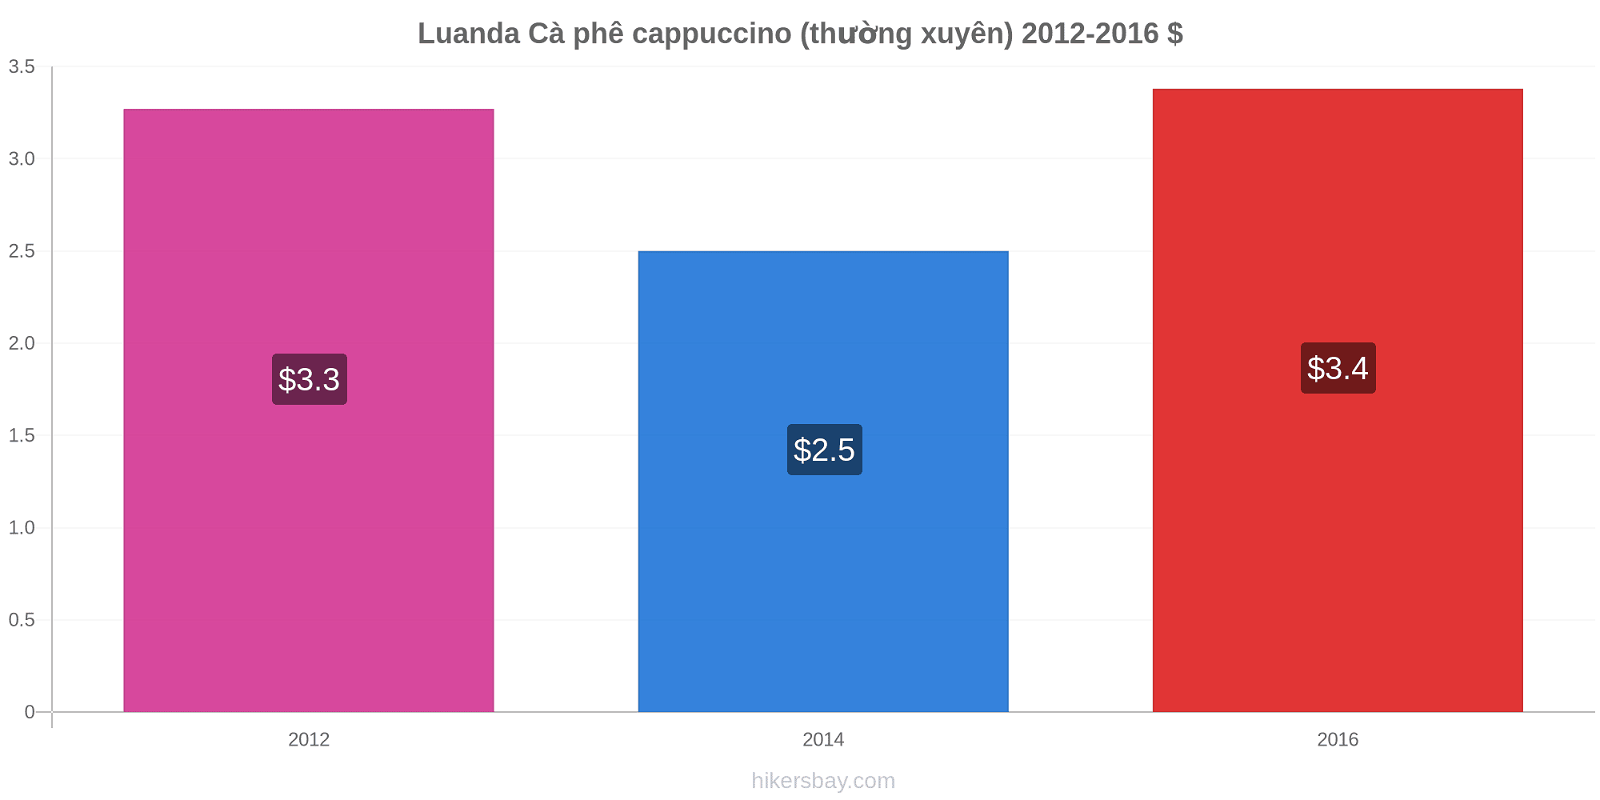 Luanda thay đổi giá Cà phê cappuccino (thường xuyên) hikersbay.com